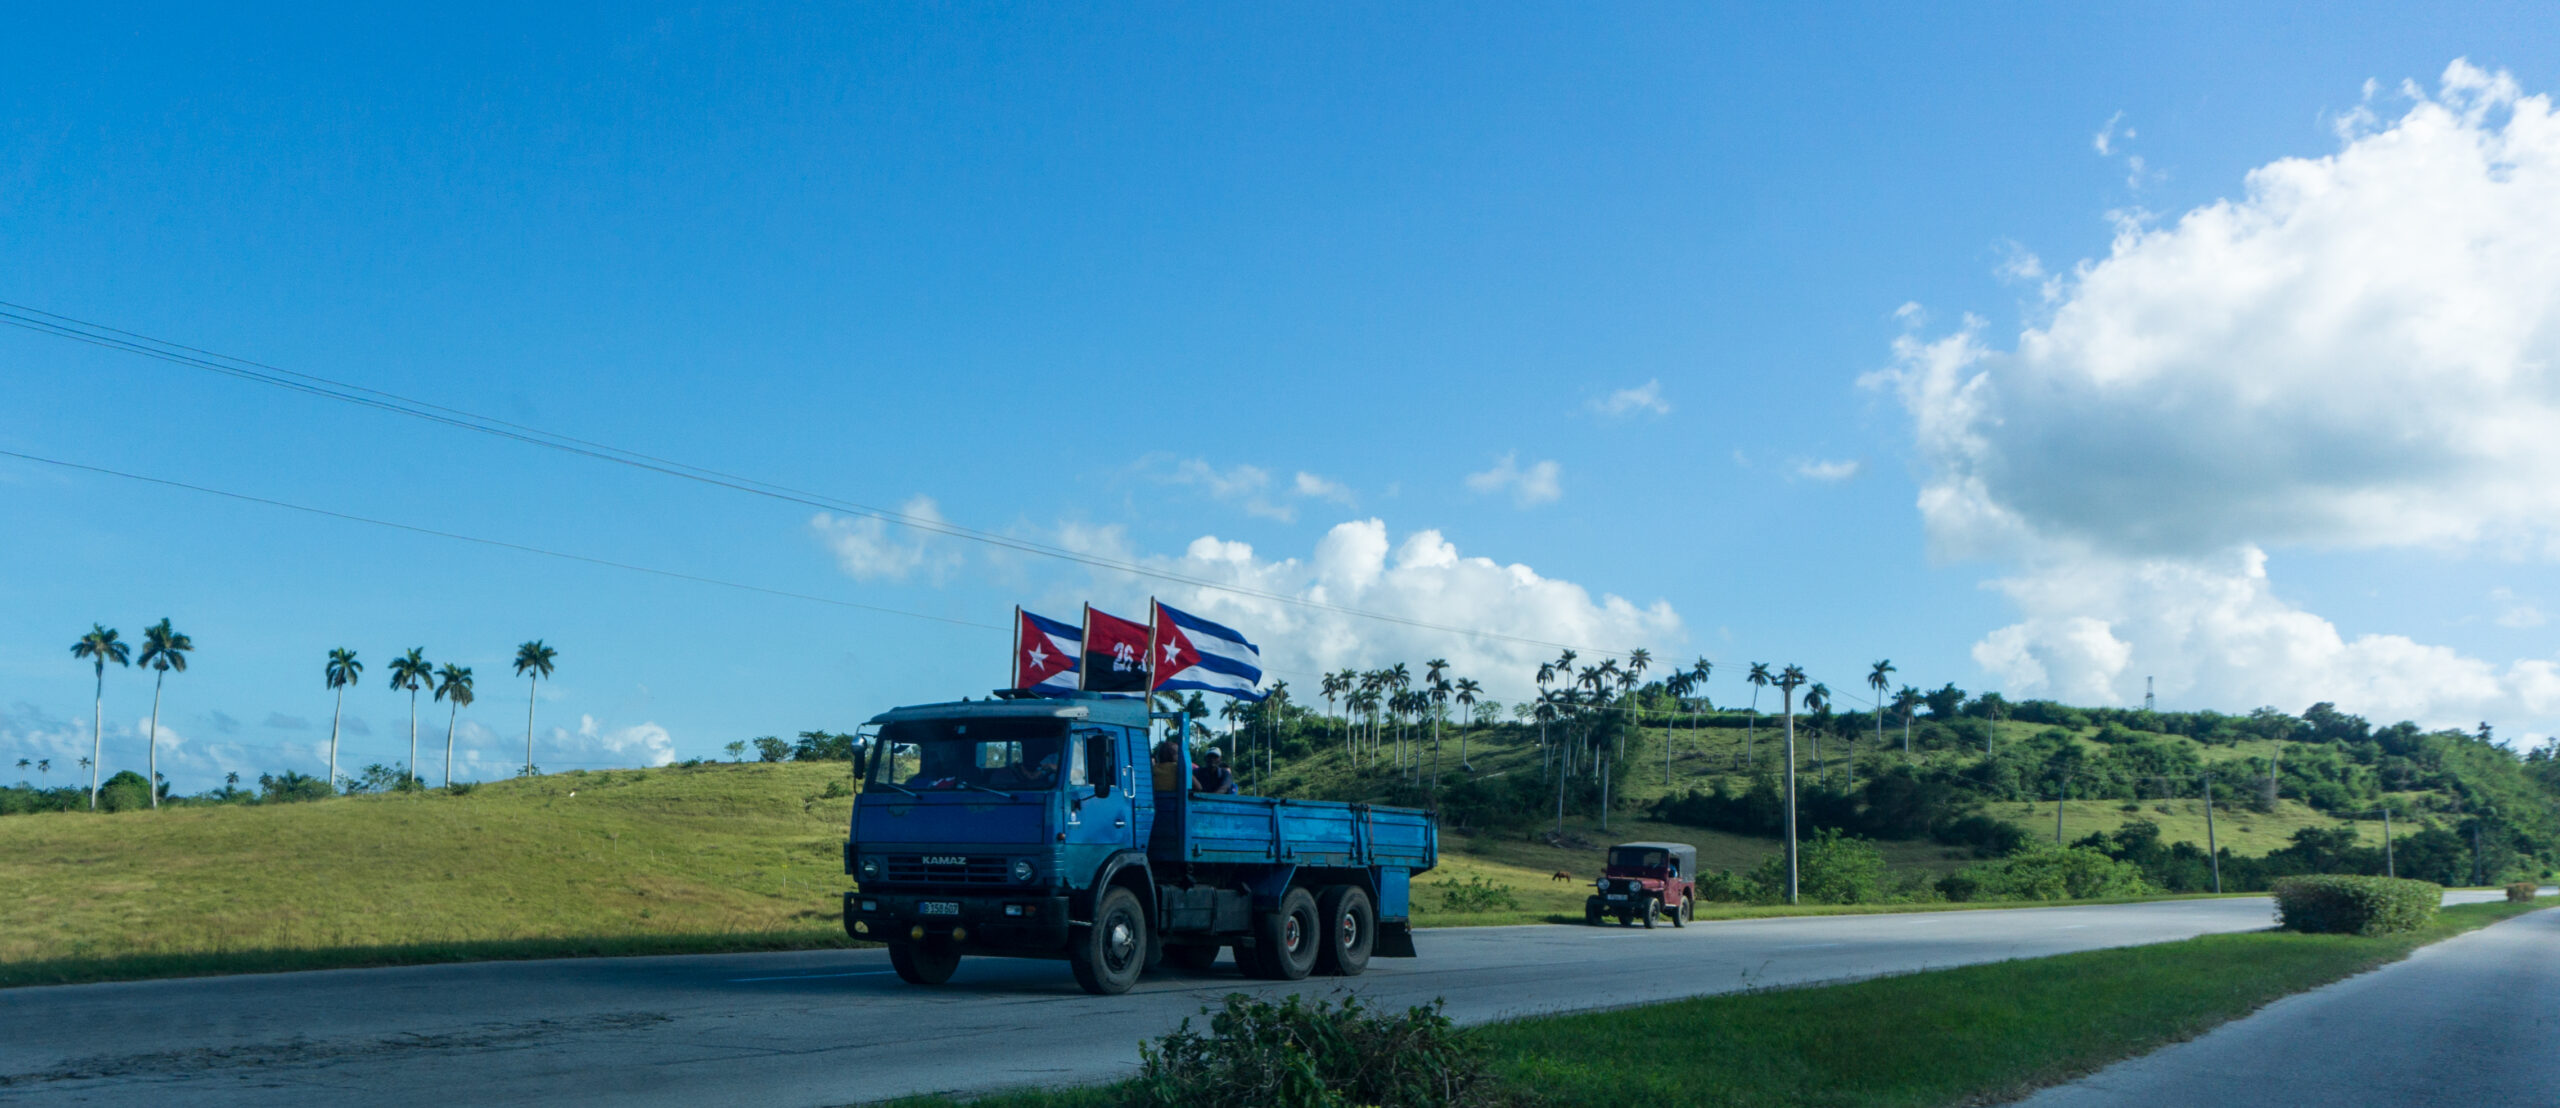 Cuba Flag On Truck